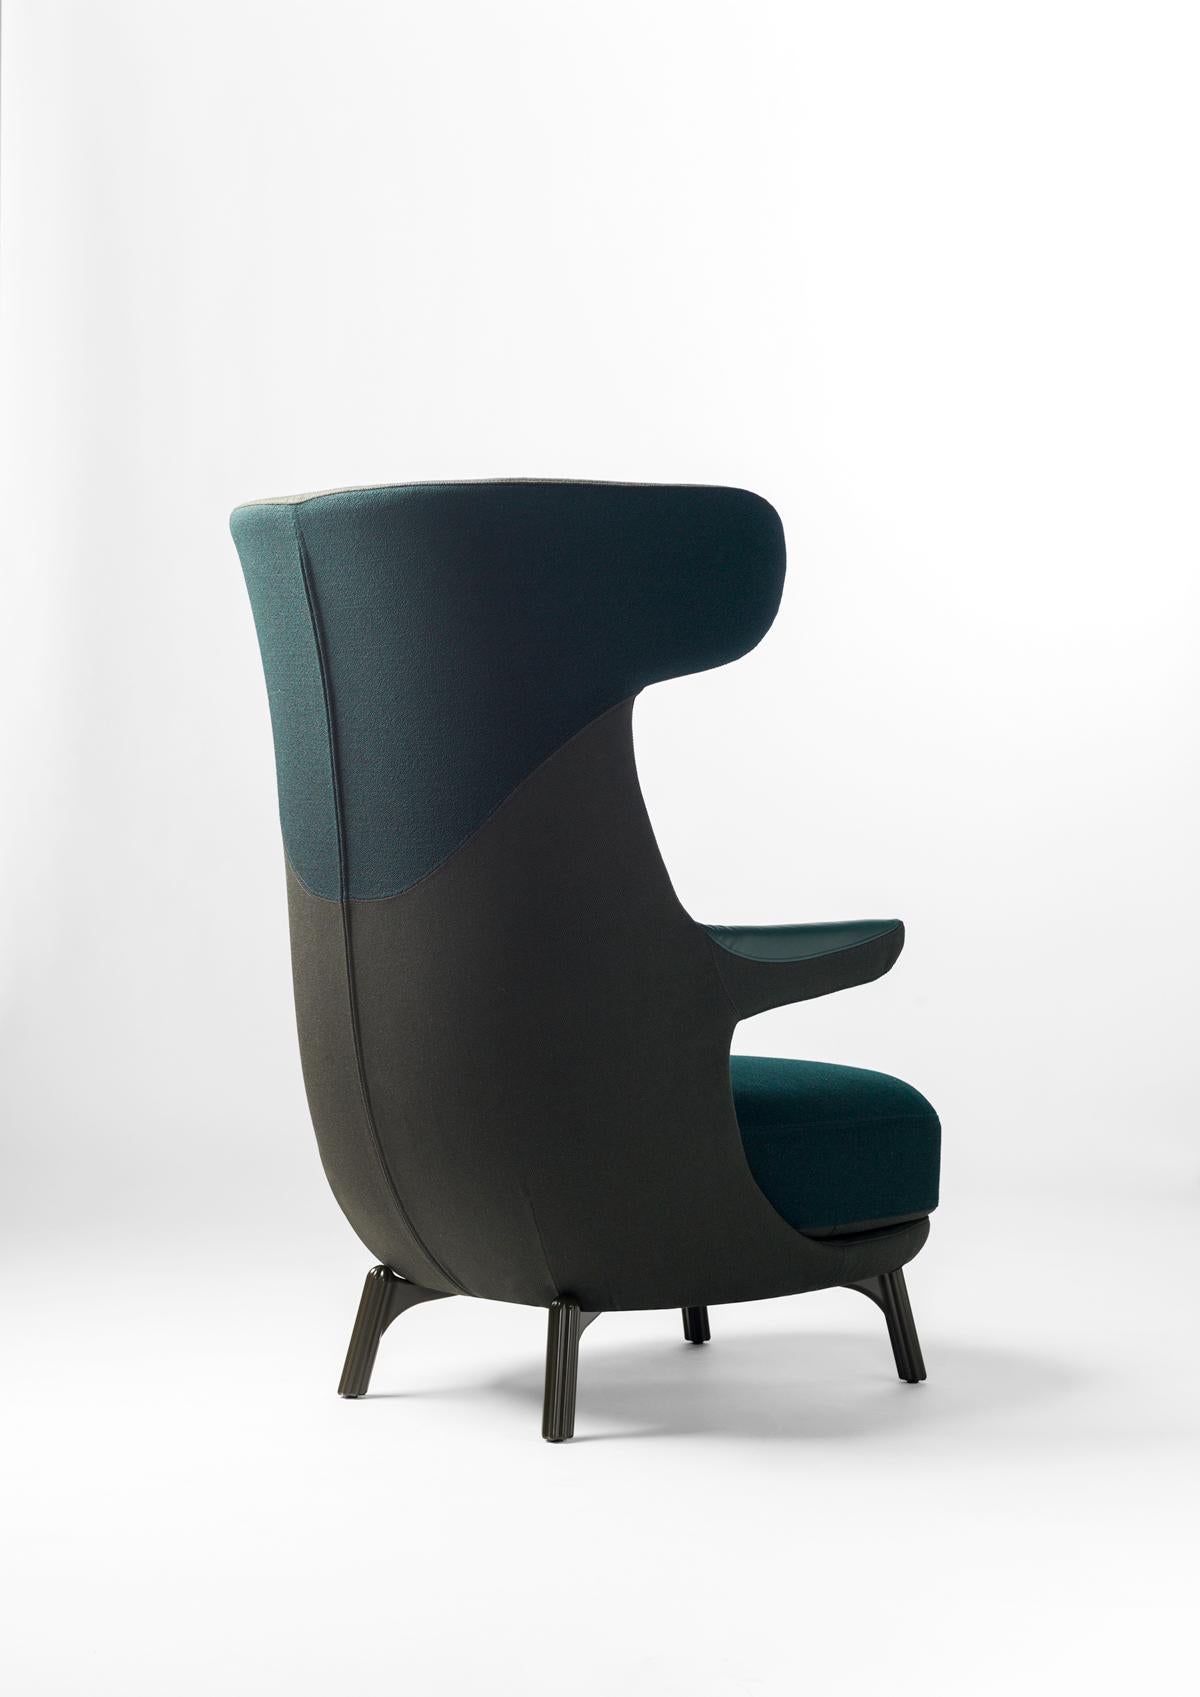 Ein neuer Sessel von Jaime Hayon, der sich in einen Klassiker verwandeln wird. So bequem wie möglich innerhalb bestimmter Abmessungen, die sich gut an den Körper und den Raum, in dem er sich befindet, anpassen, sowohl für zu Hause als auch für den